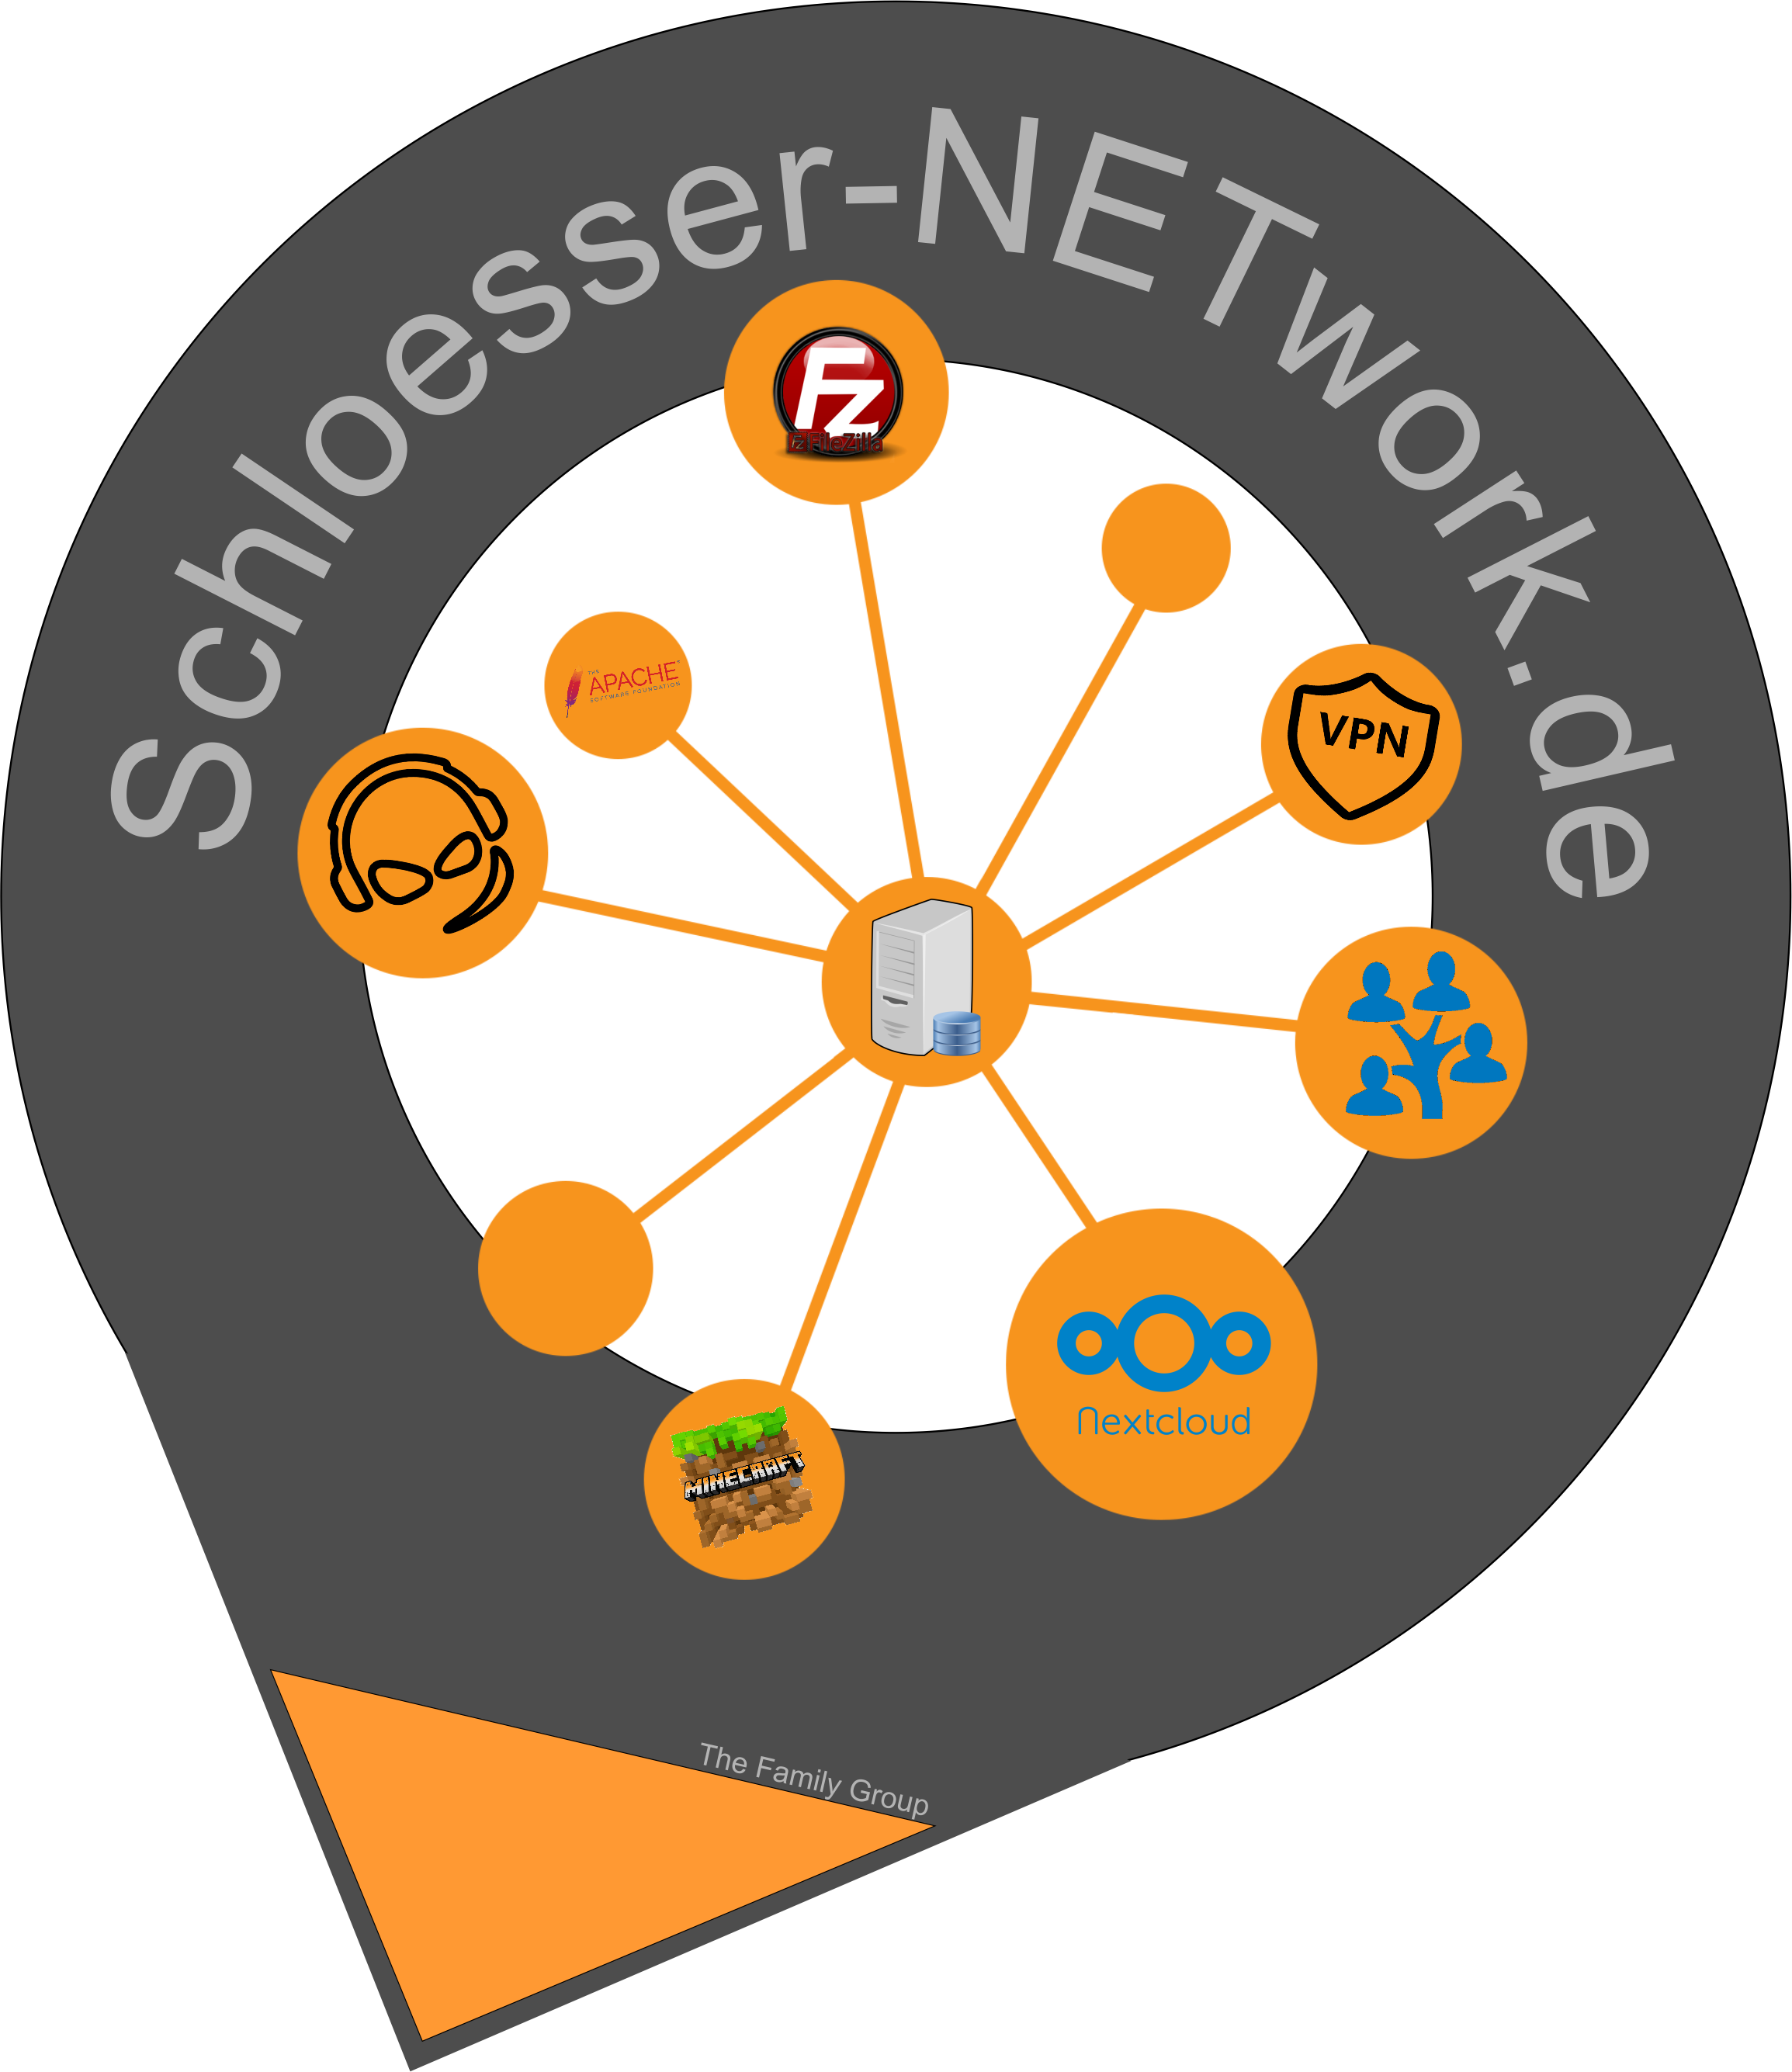 (c) Schloesser-network.de